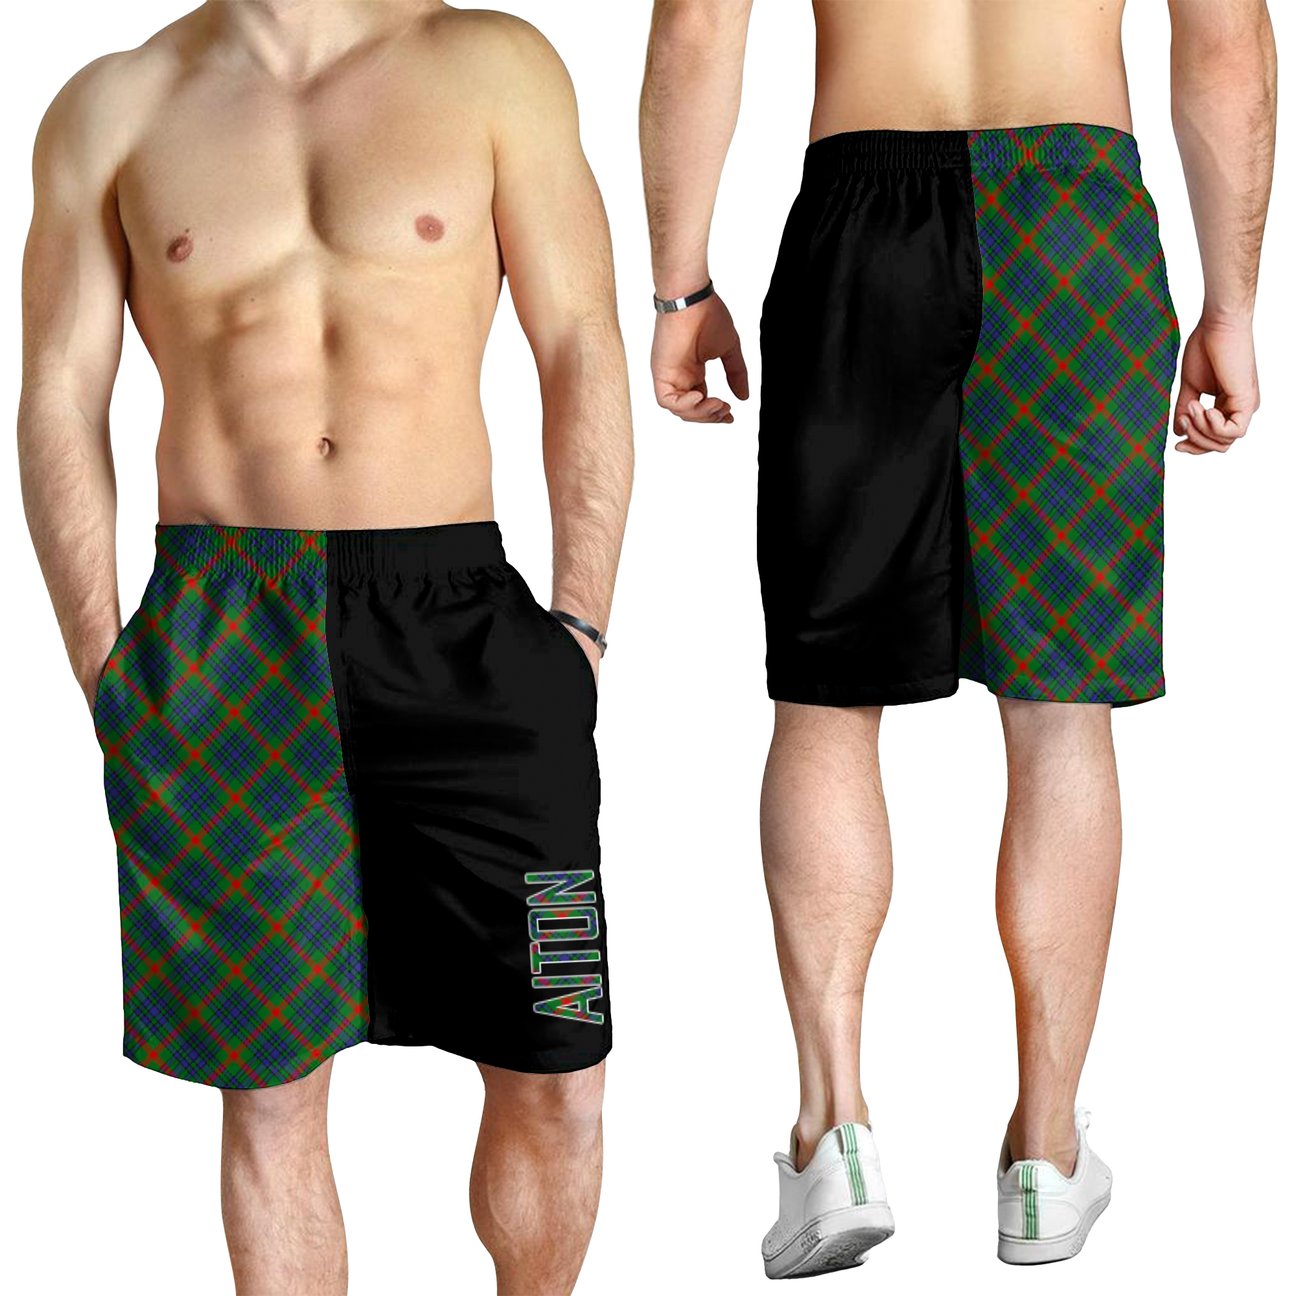 Aiton Tartan Crest Men's Short - Cross Style